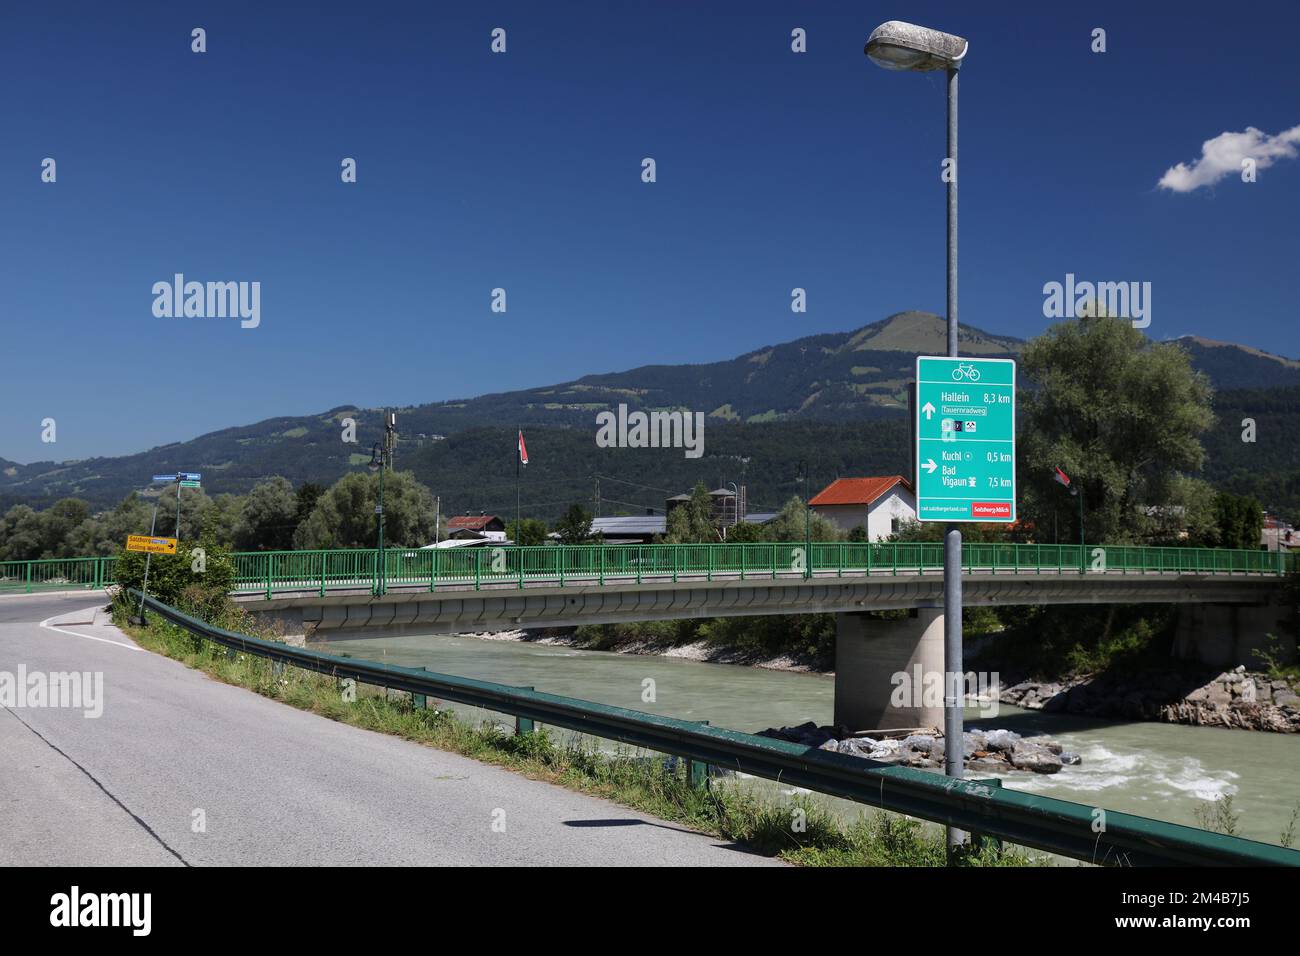 HALLEIN, AUTRICHE - 4 AOÛT 2022 : indications de direction de la piste cyclable à Hallein, y compris la piste cyclable la plus longue de Tauernradweg en Autriche. Banque D'Images